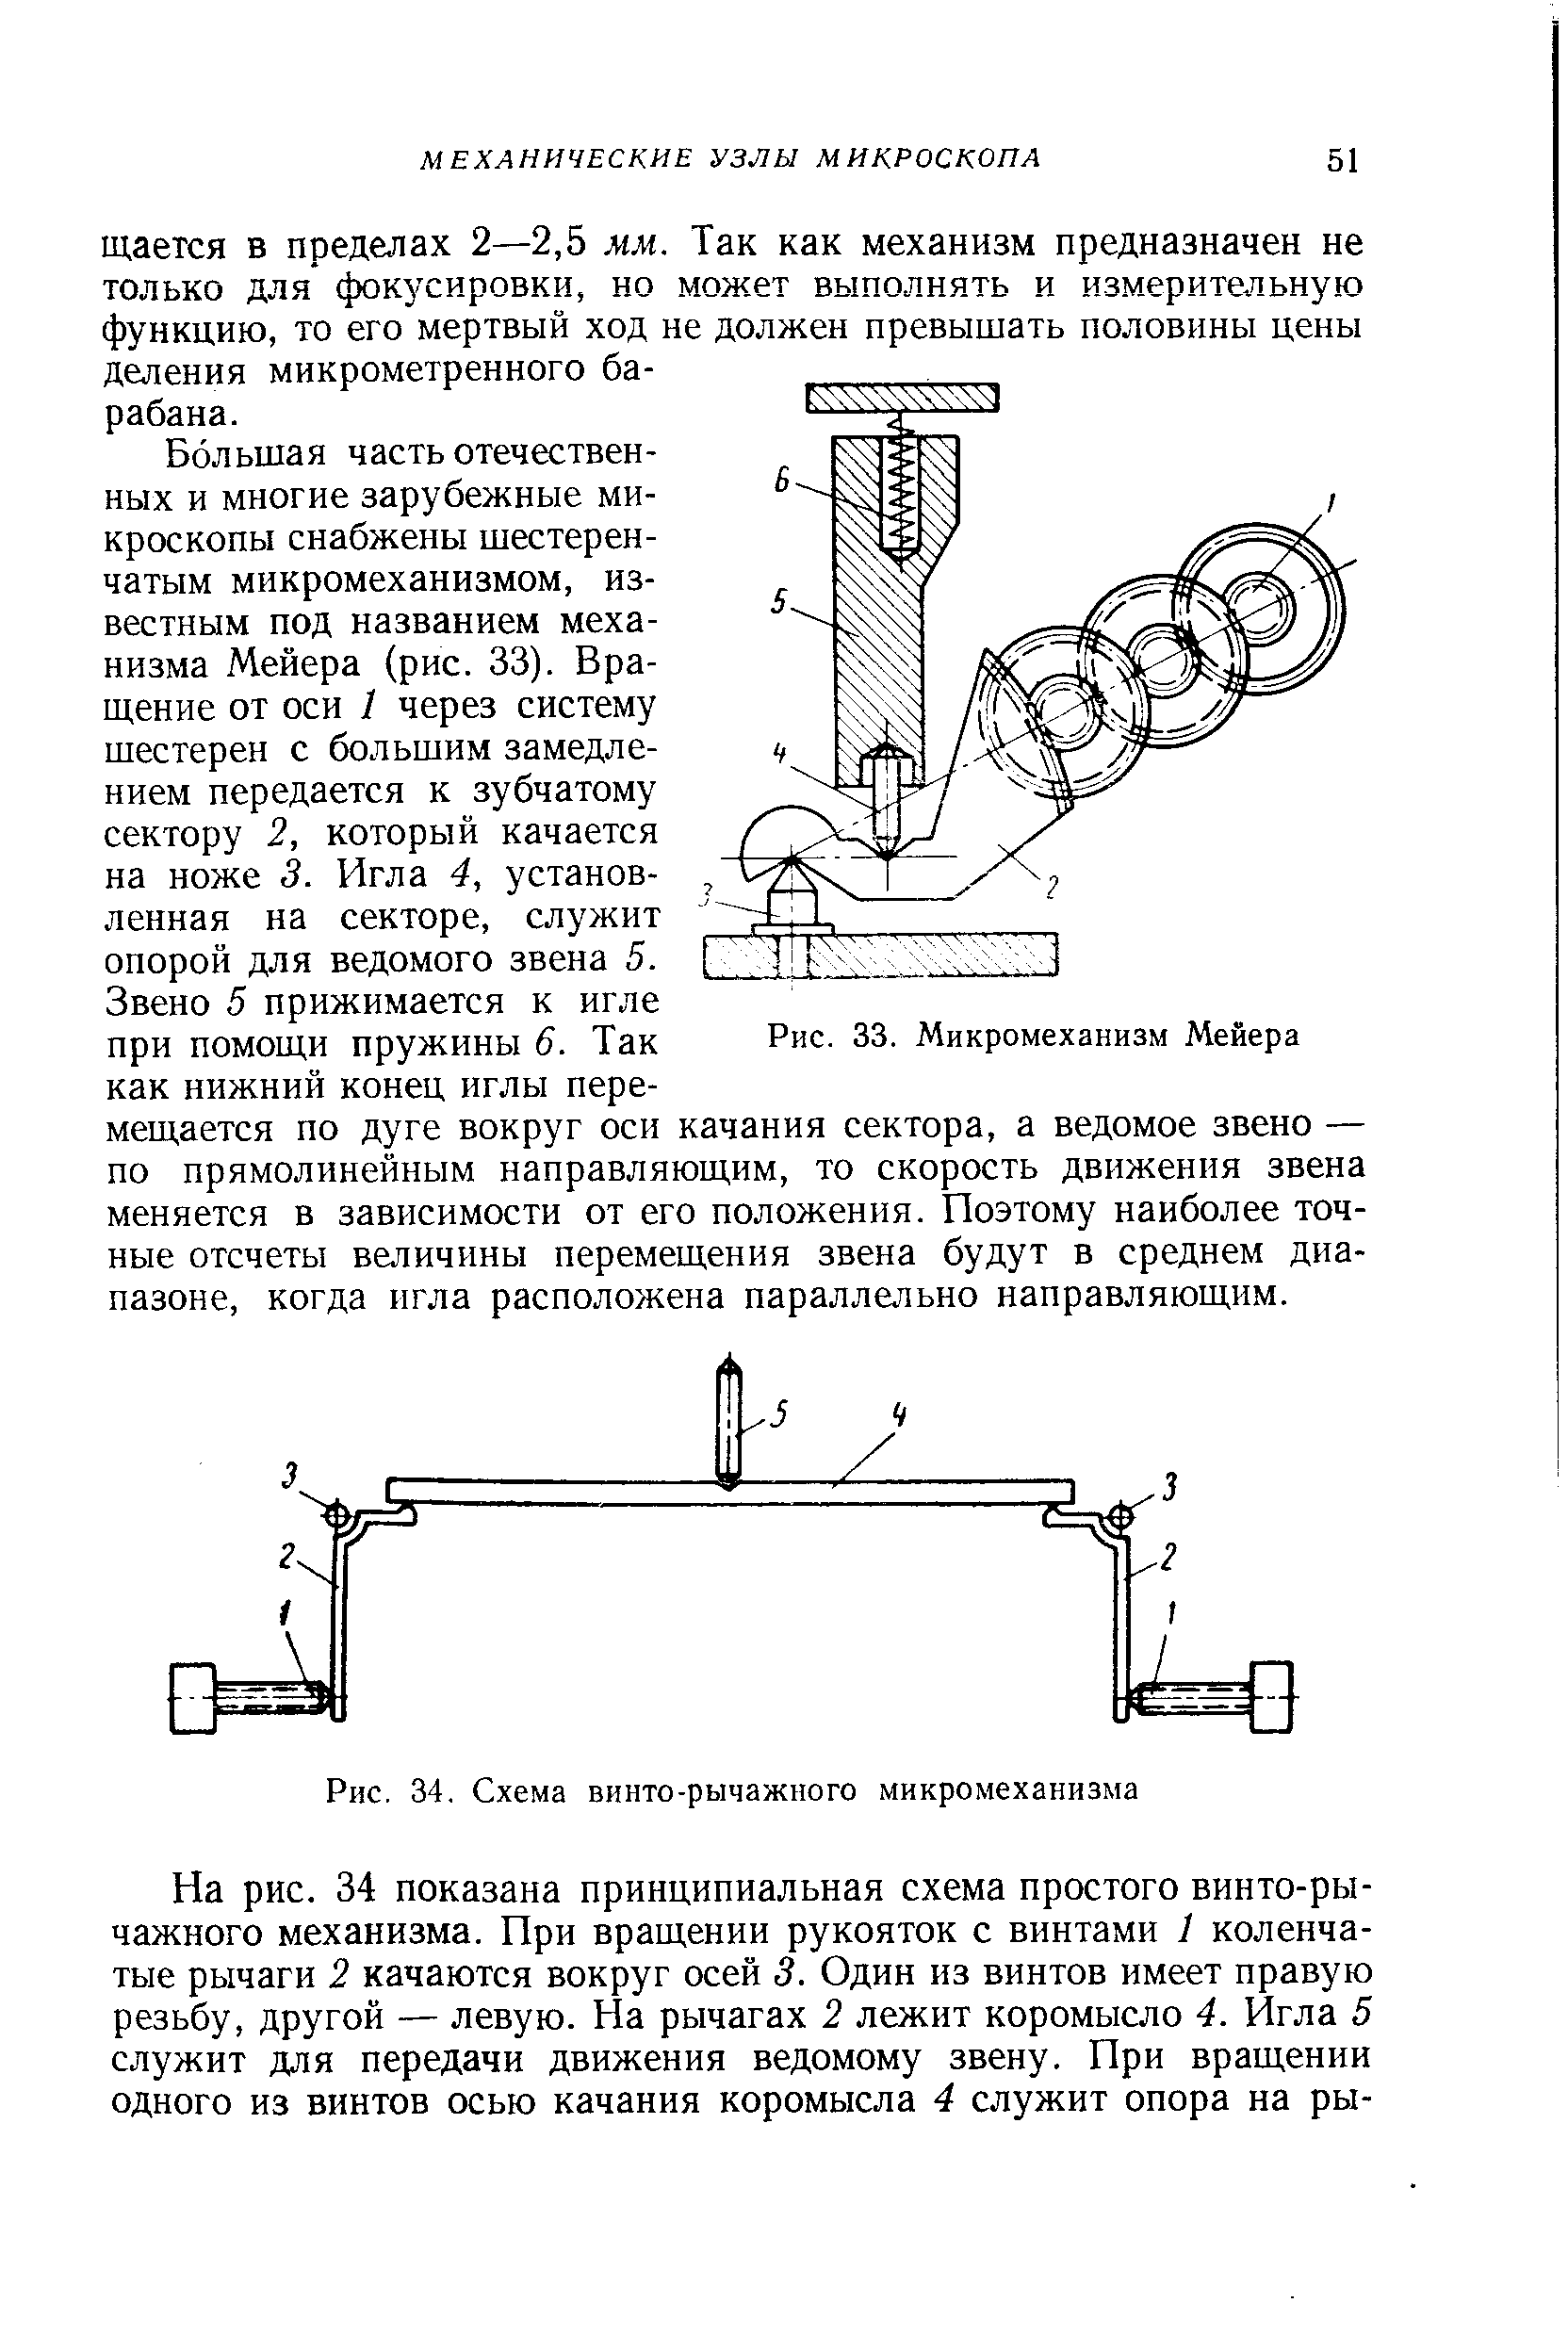 Рис. 34, Схема винто-рычажного микромеханизма
